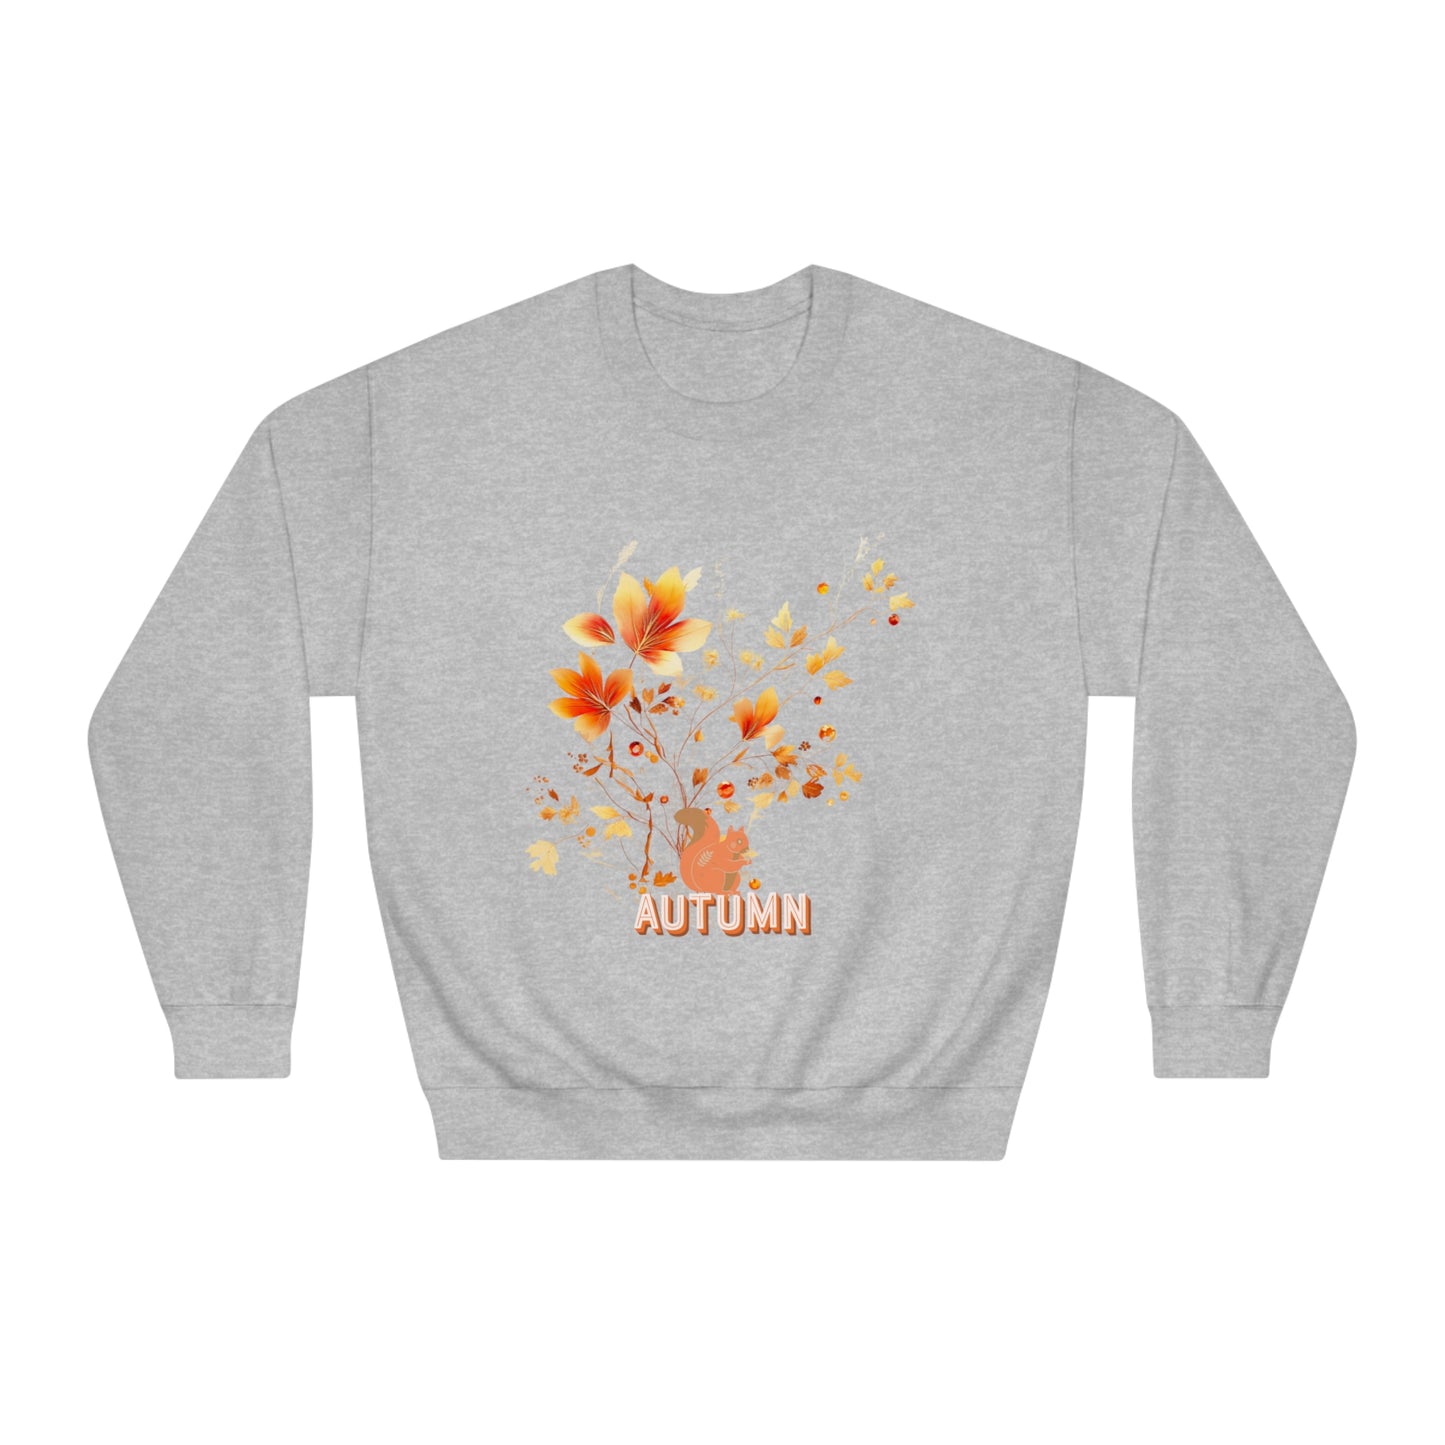 Autumn Leaves Delight Sweatshirt For Autumn Lovers Sweatshirt   